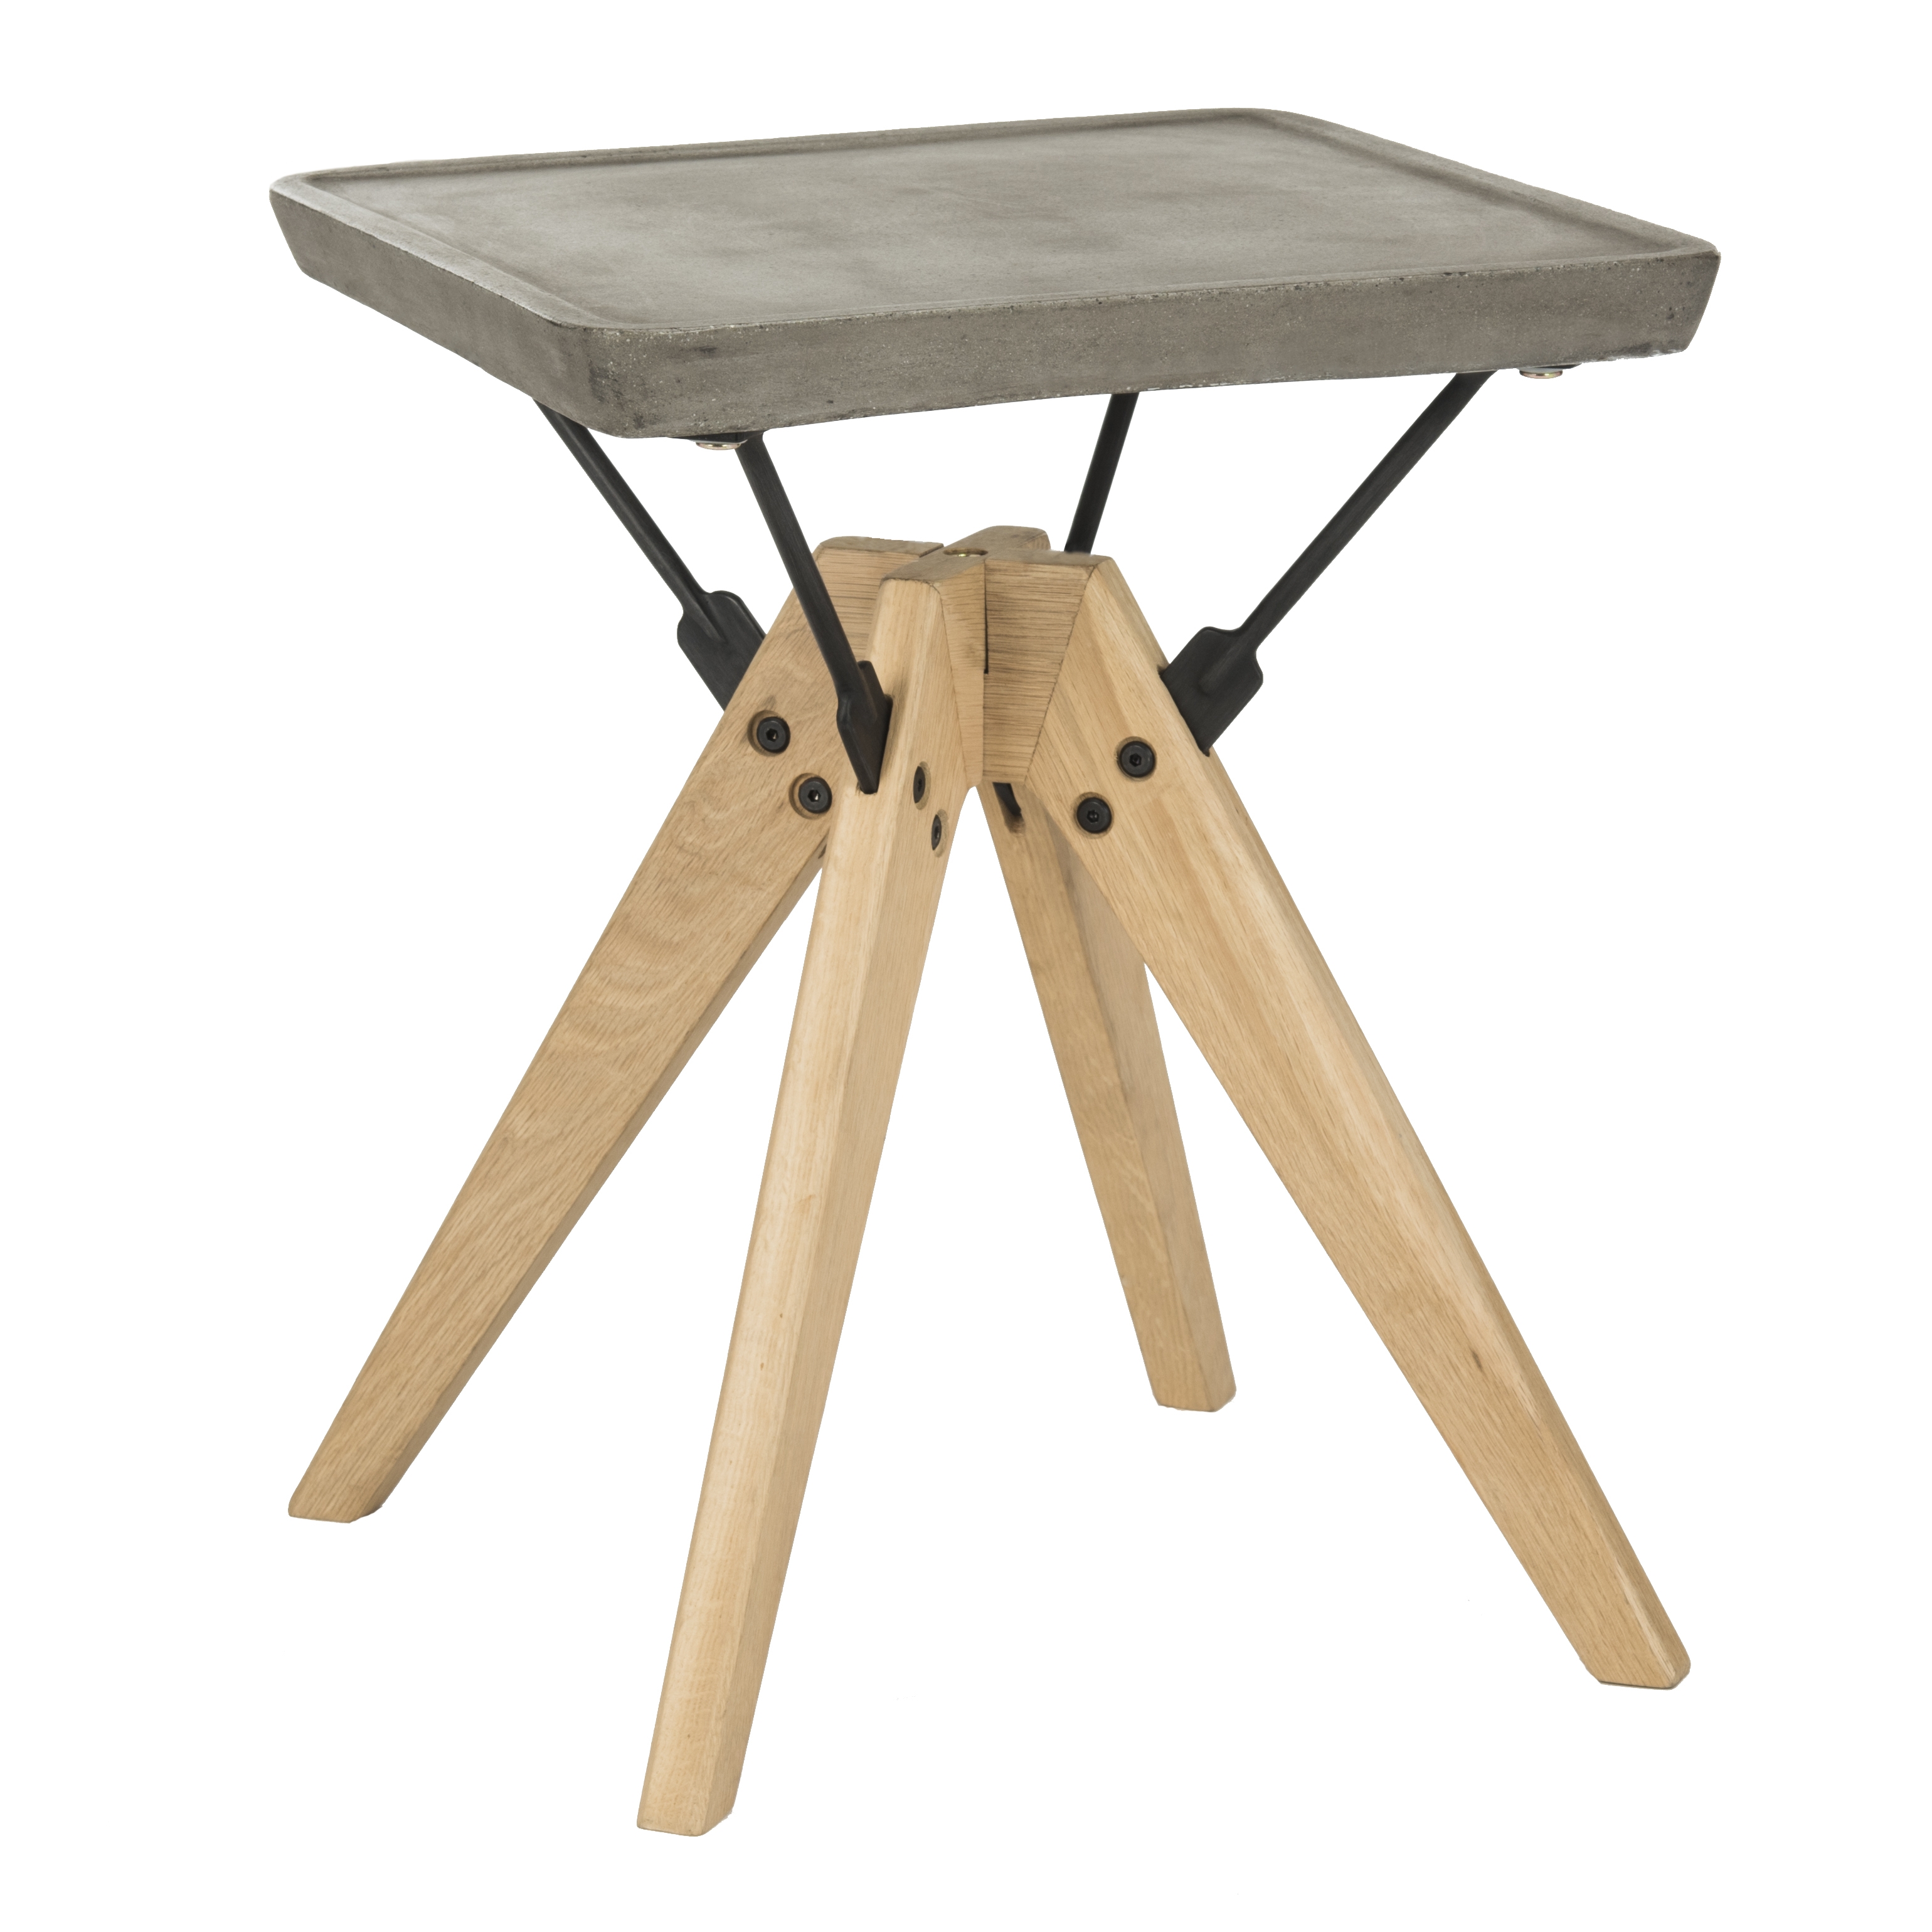 Marcio Indoor/Outdoor Modern Concrete 19.69-Inch H Side Table - Dark Grey - Arlo Home - Image 1